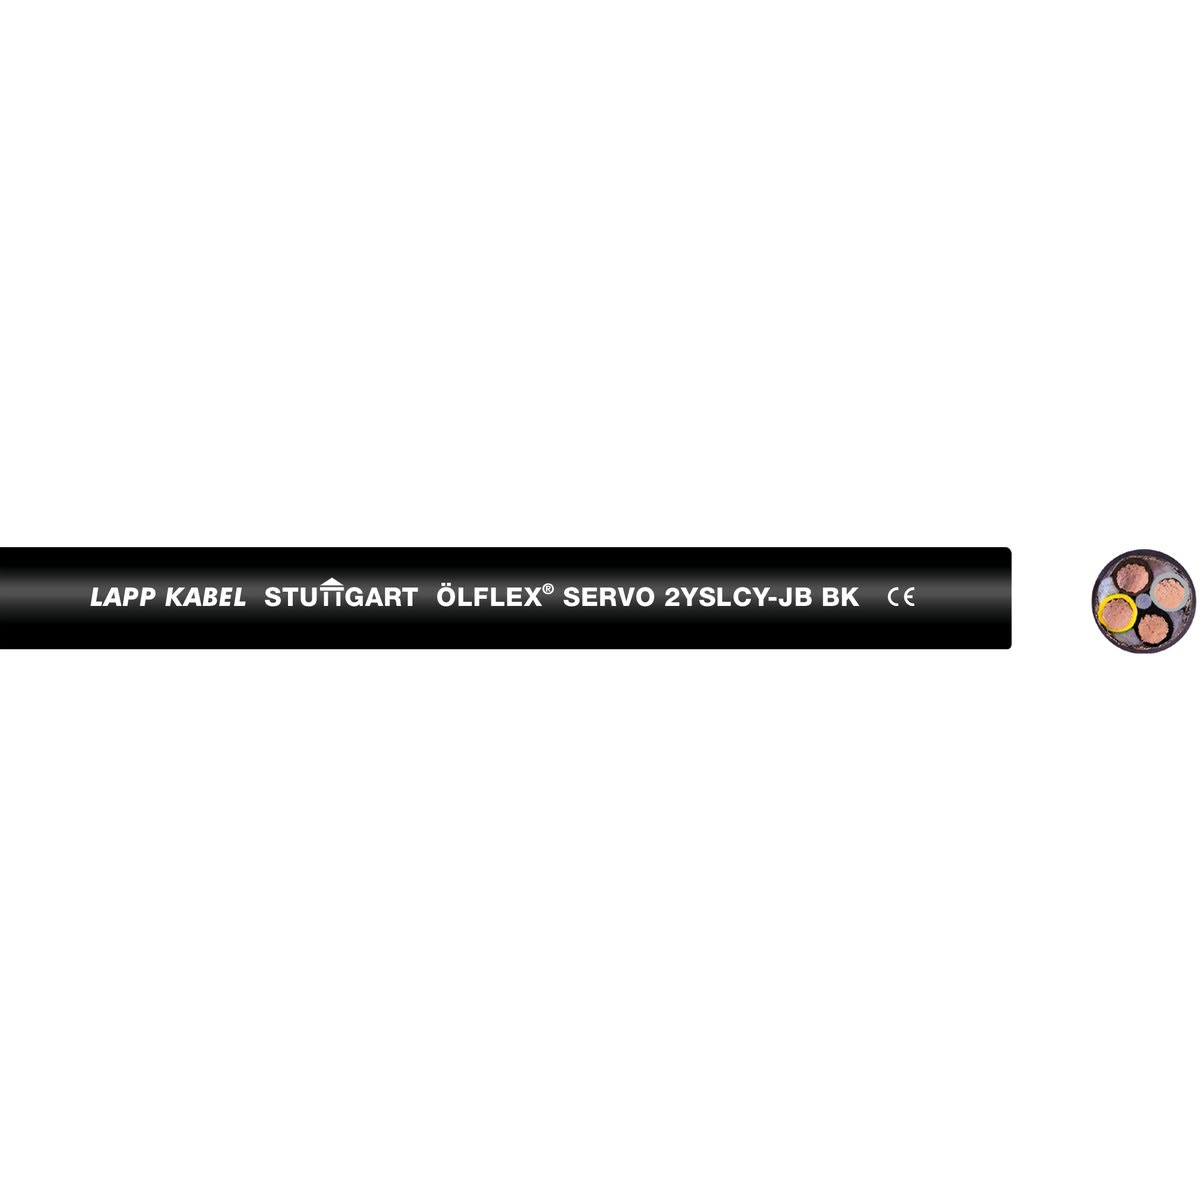 Lapp - ÖLFLEX SERVO 2YSLCY-JB BK 4G95